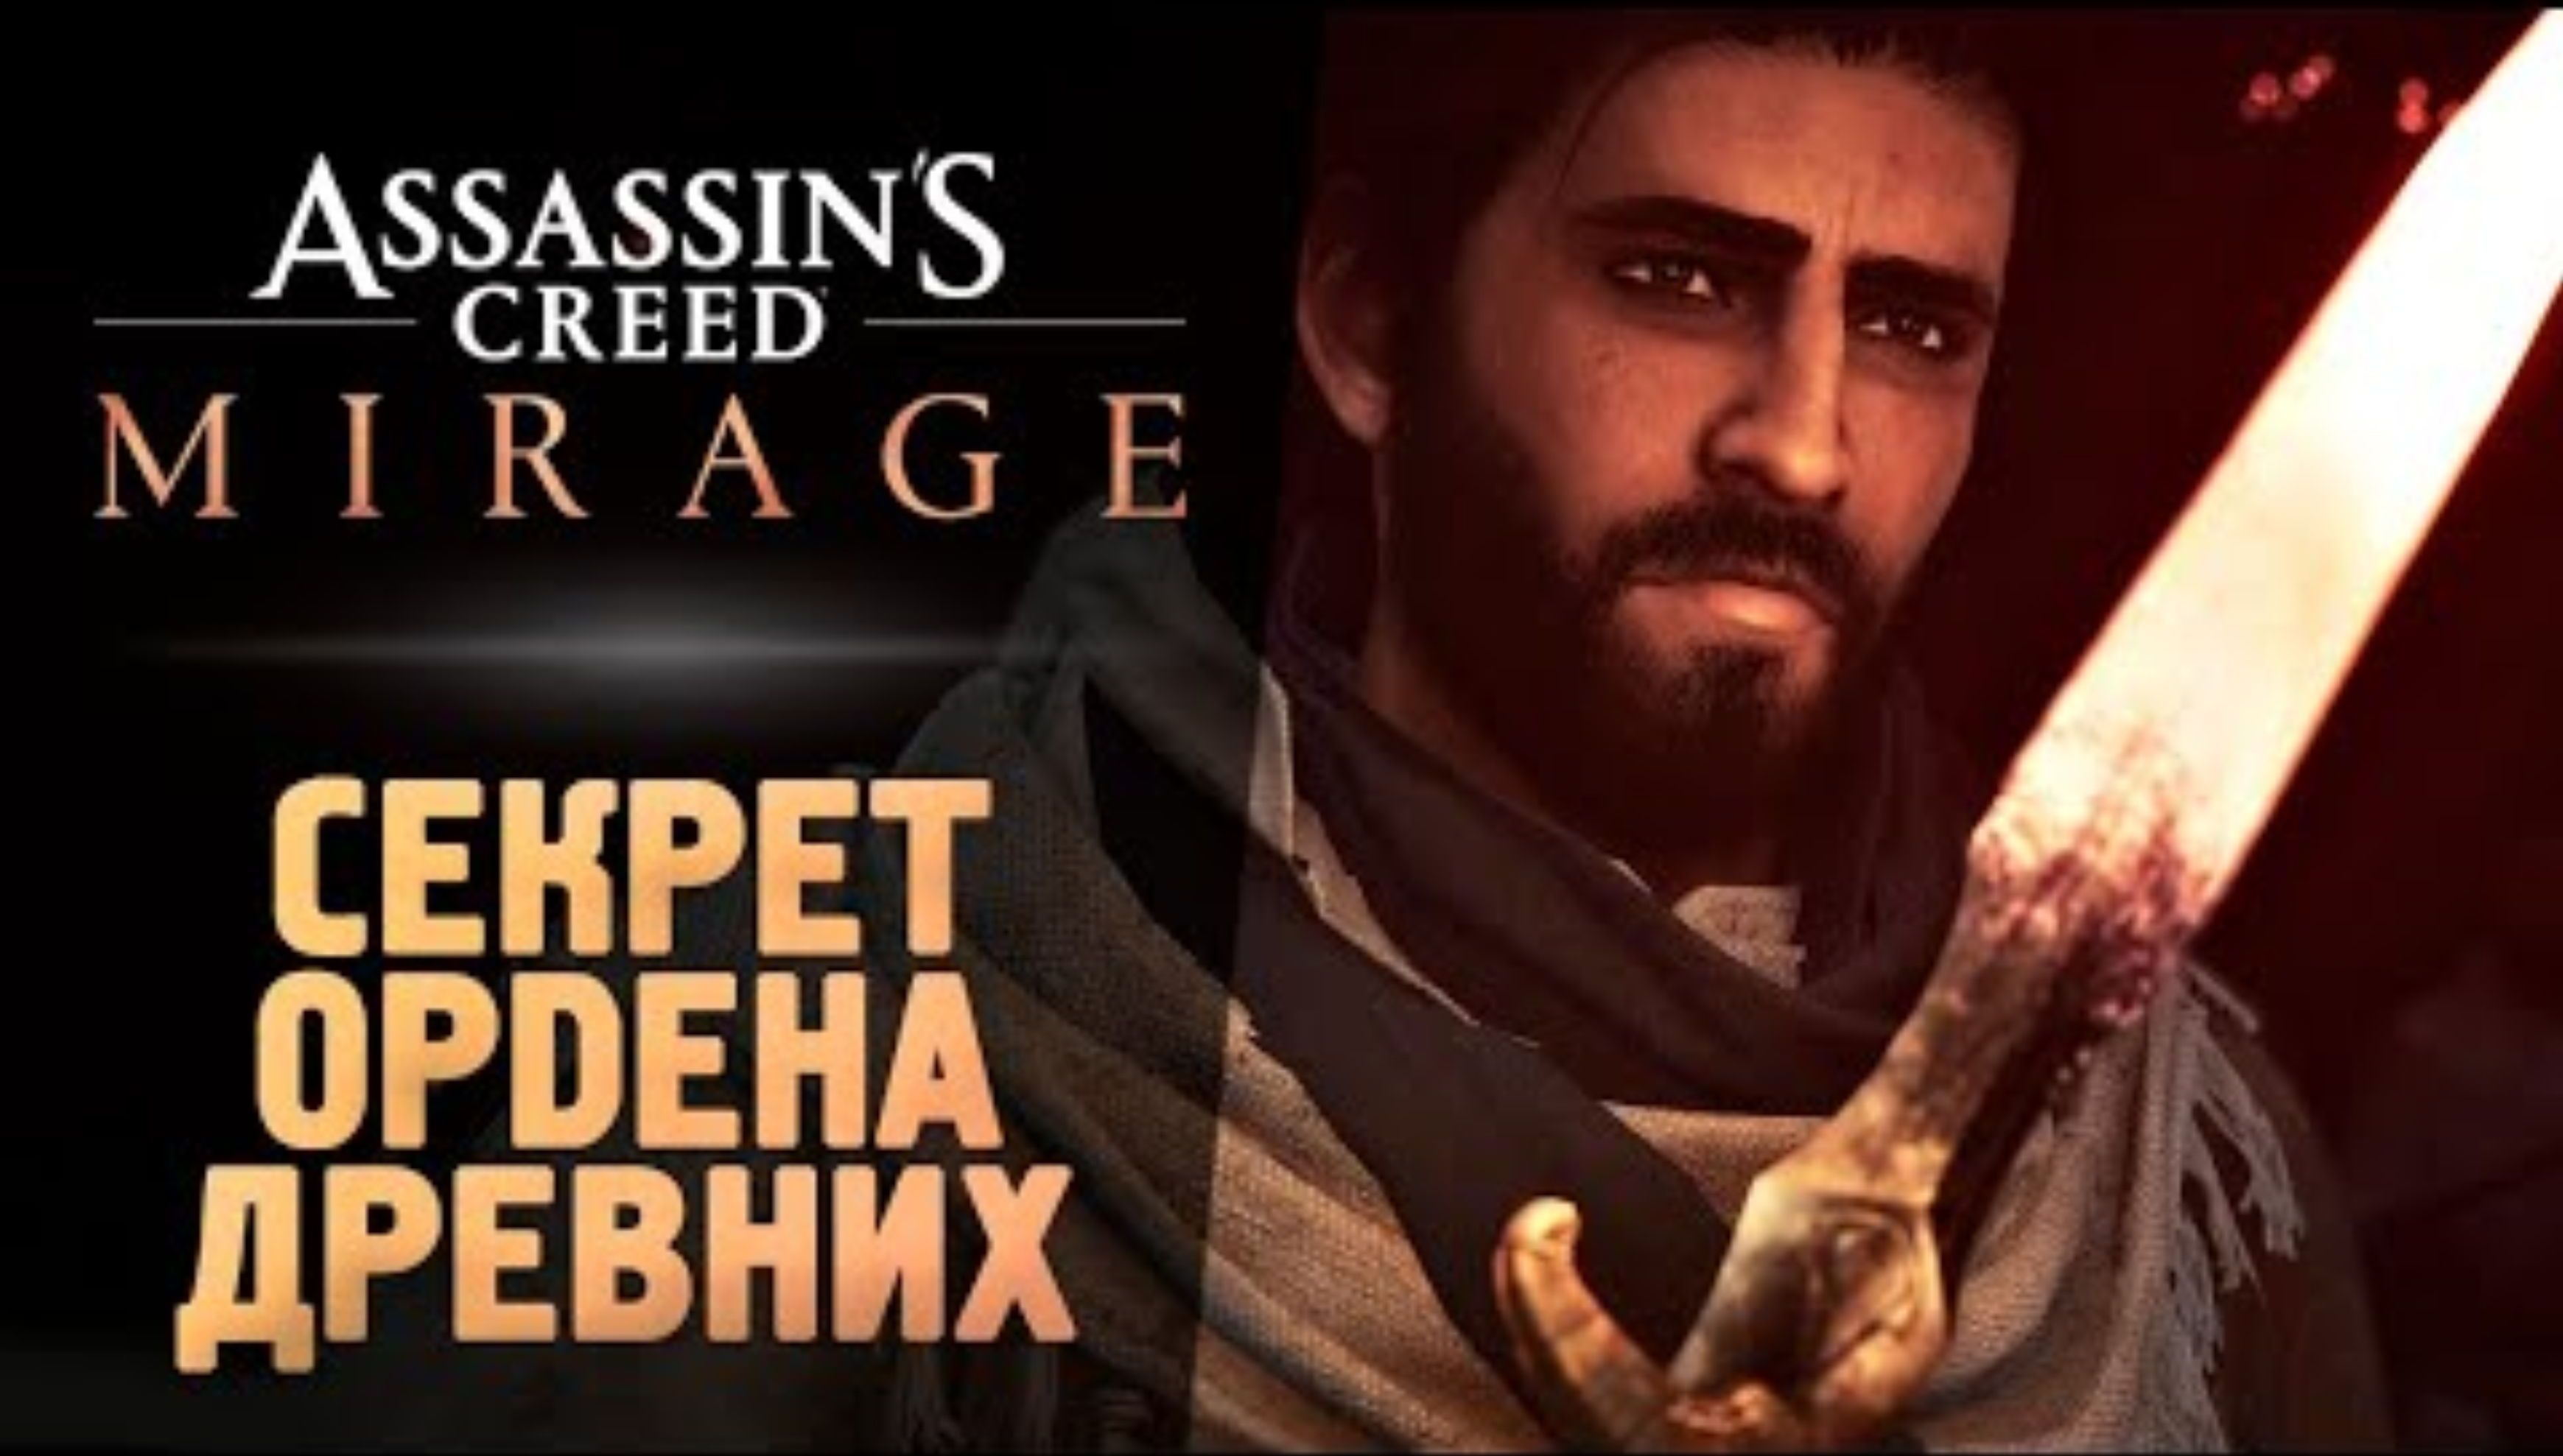 ОРДЕН ДРЕВНИХ - Прохождение - Assassin’s Creed Mirage #2